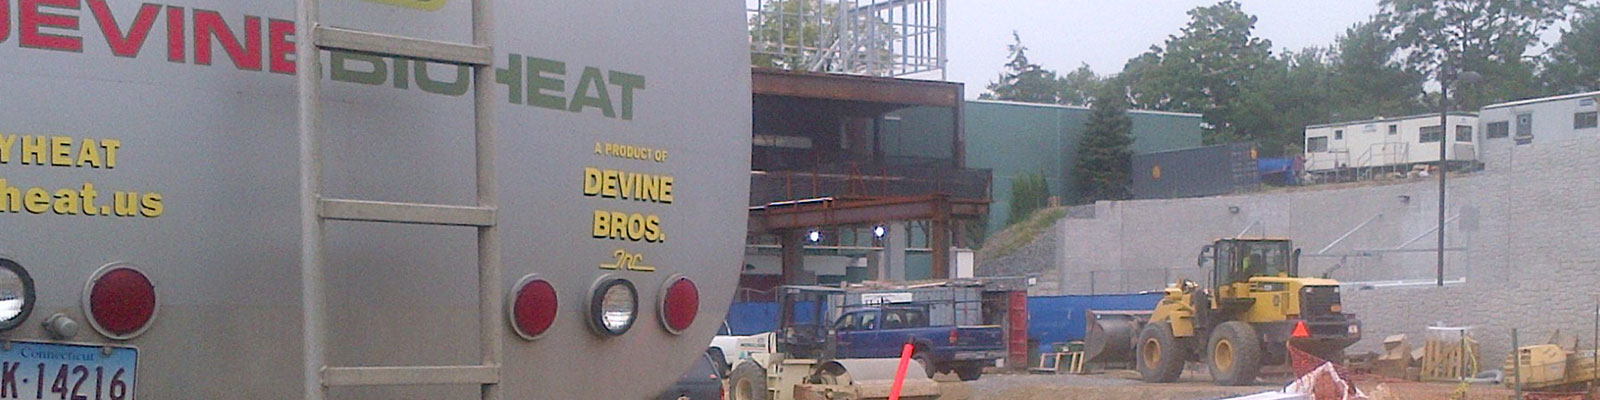 Bioheat Truck with Jobsite in Background | Bioheat Westport | Building Supplies Norwalk